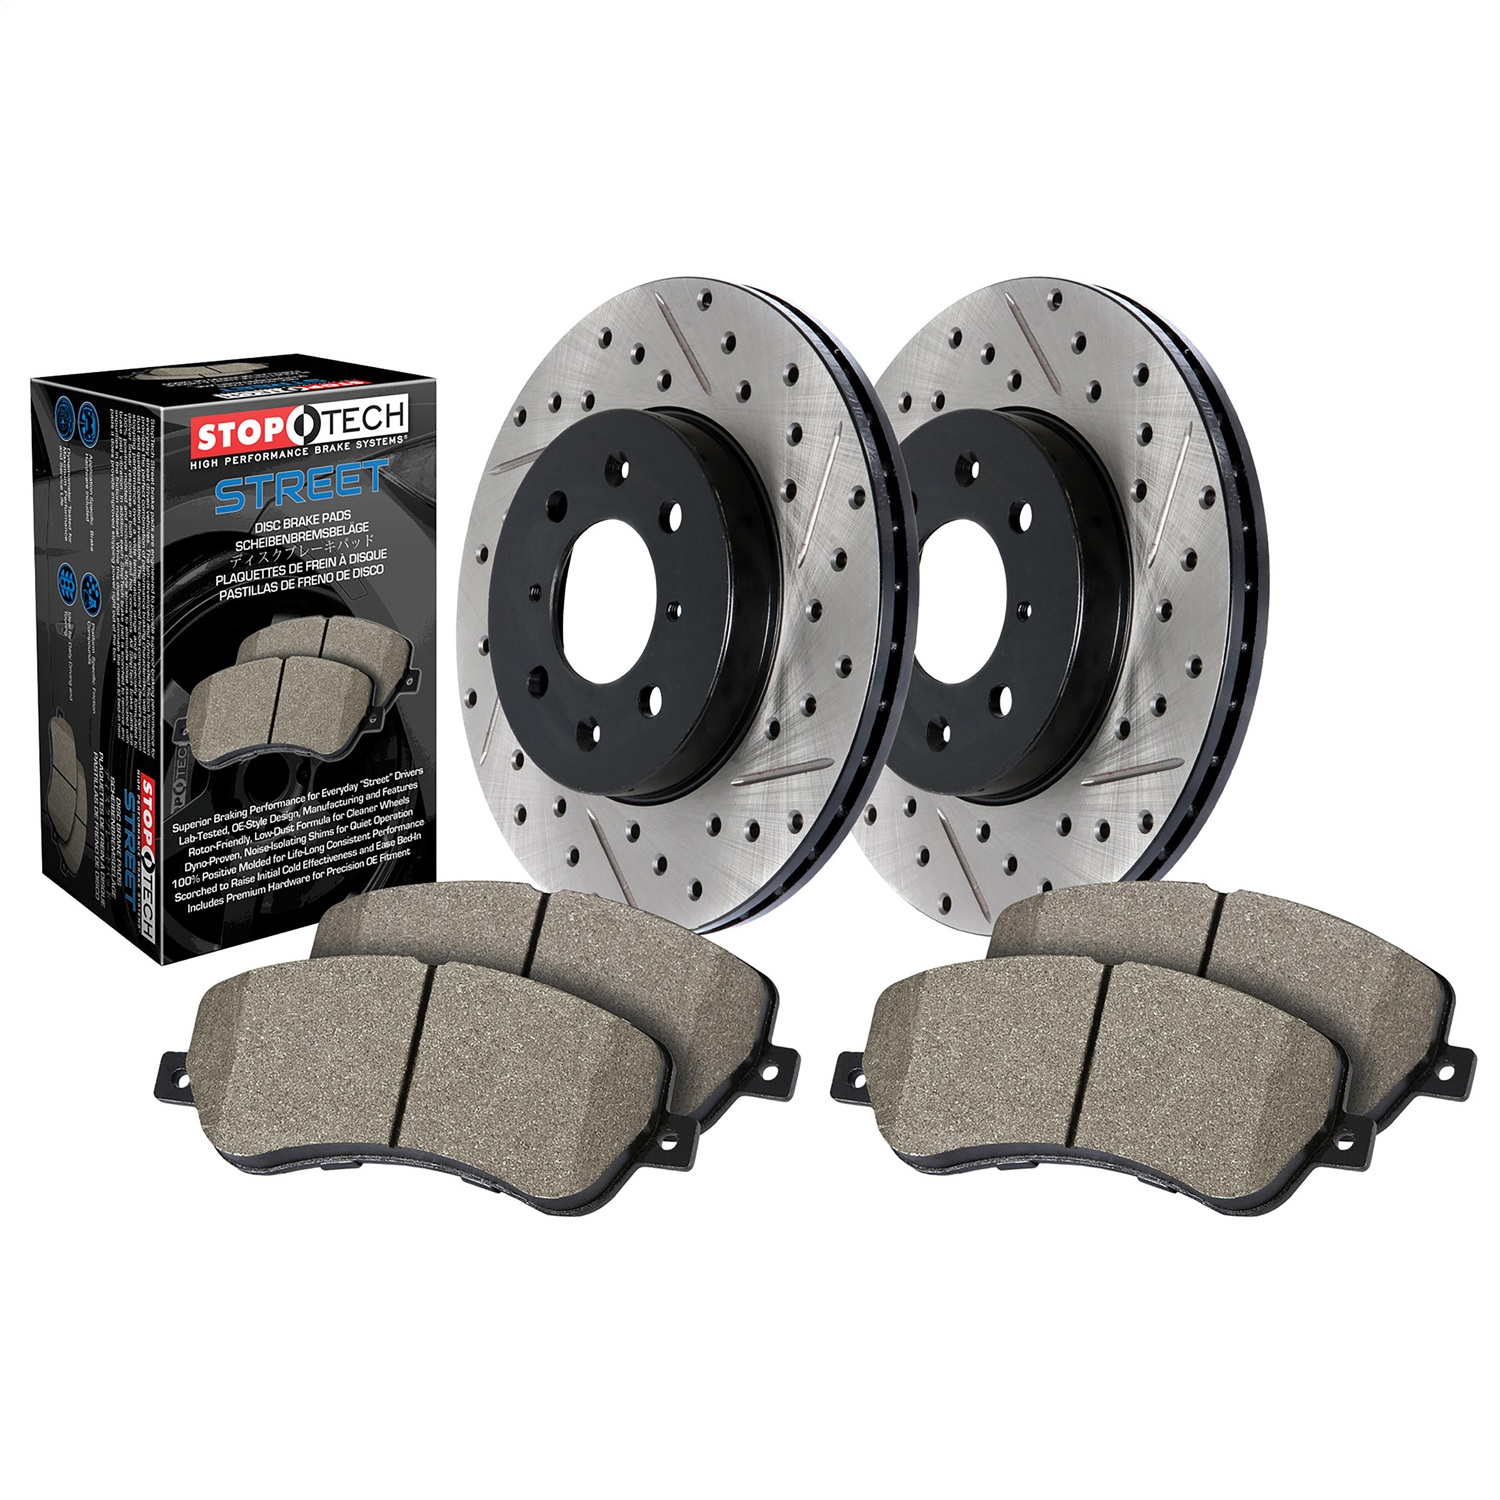 StopTech 938.40006 Disc Brake Upgrade Kit